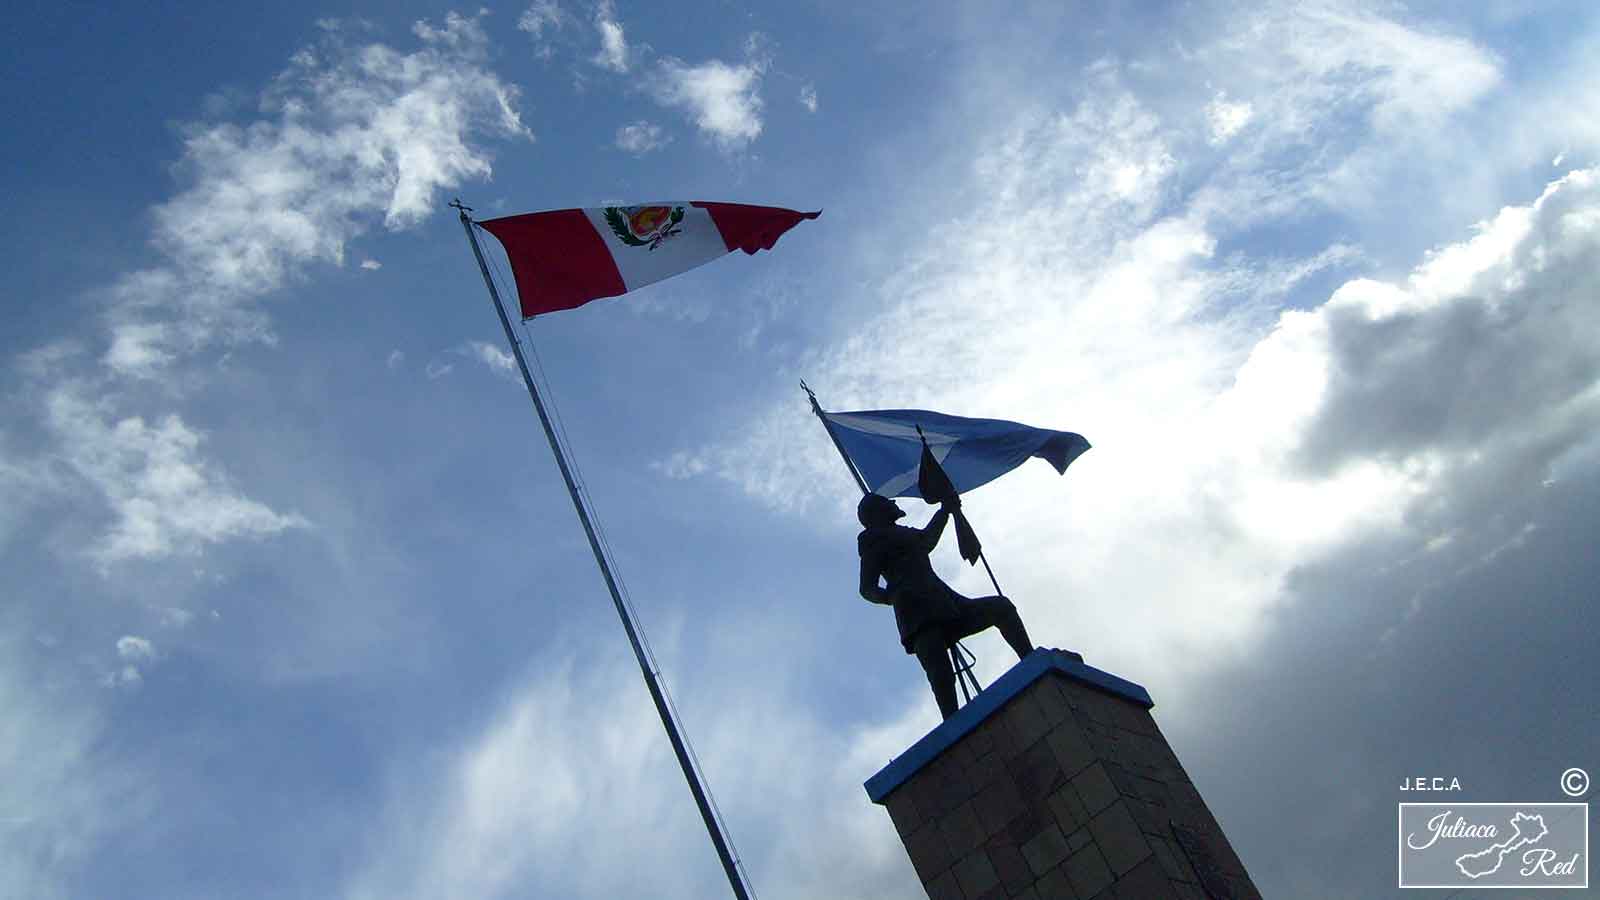 Monumento a Francisco Bolognesi, Cabana San Román